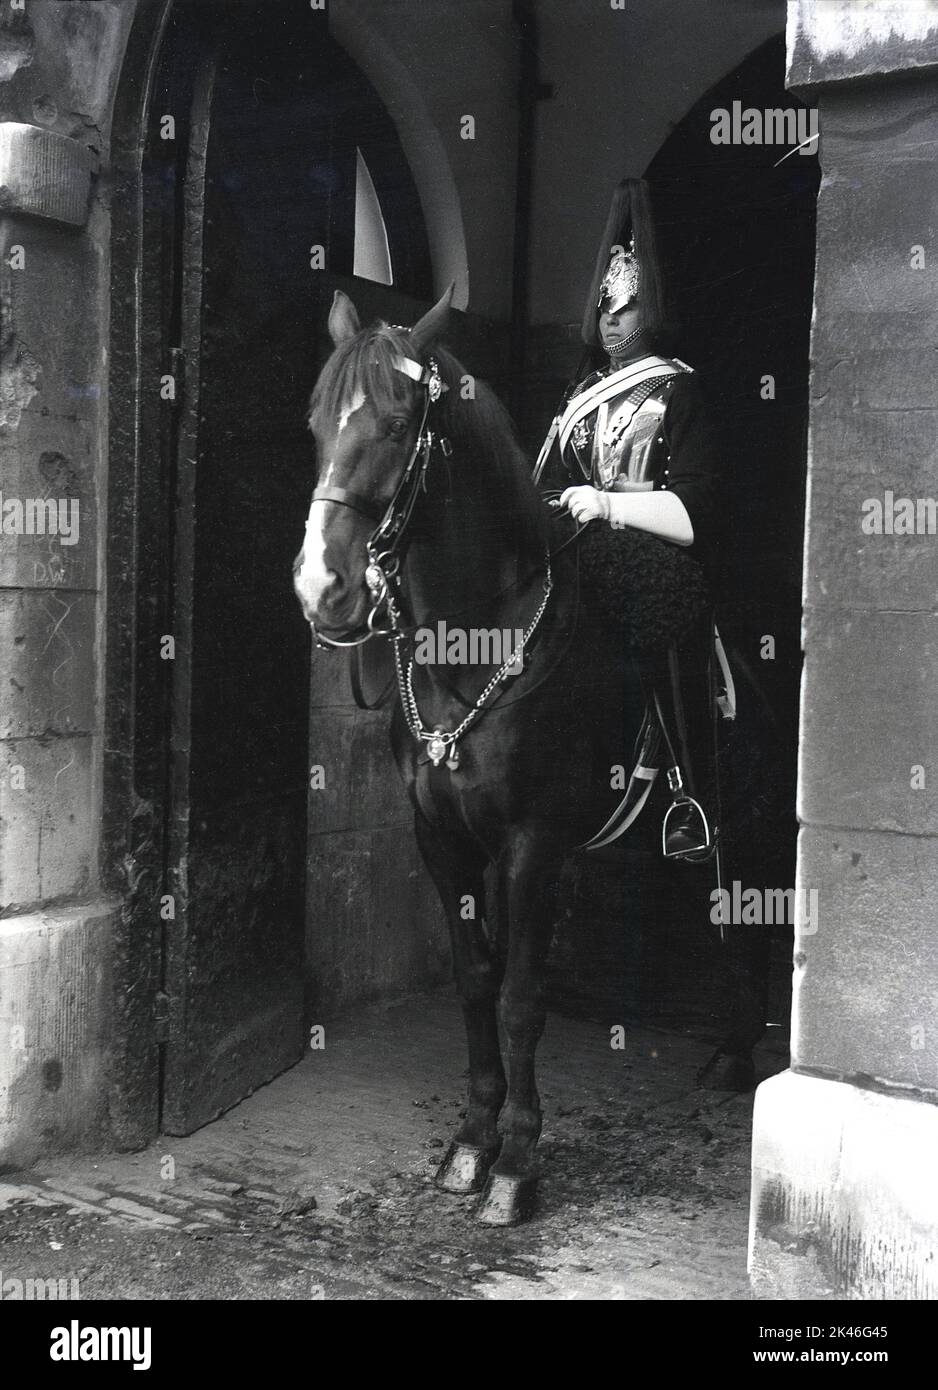 1958, historique, garde de vie du roi à cheval, en service de sentinelle auprès des gardes à cheval, l'entrée officielle du palais de Whitehall, Westminster, Londres, Angleterre, Royaume-Uni. Le gardien porté porte un uniforme complet, une tunique et un casque cérémonial connu sous le nom de casque Albert. Banque D'Images